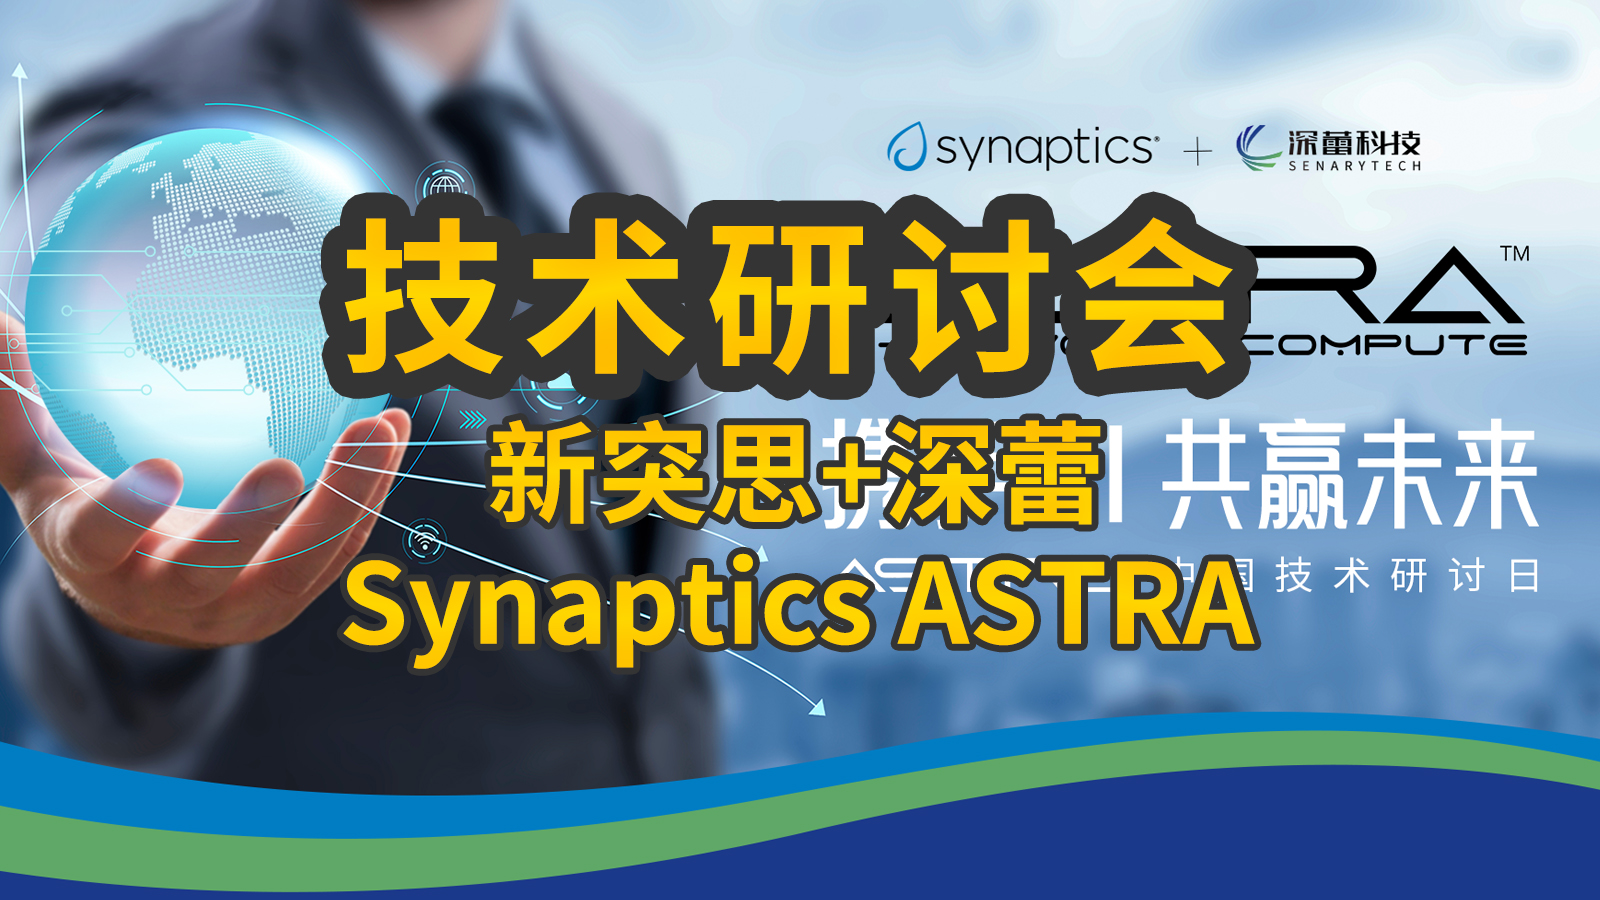 2024年6月12日深蕾科技携手Synaptics举办Astra中国技术研讨会
本次活动主题：携手AI，共赢未